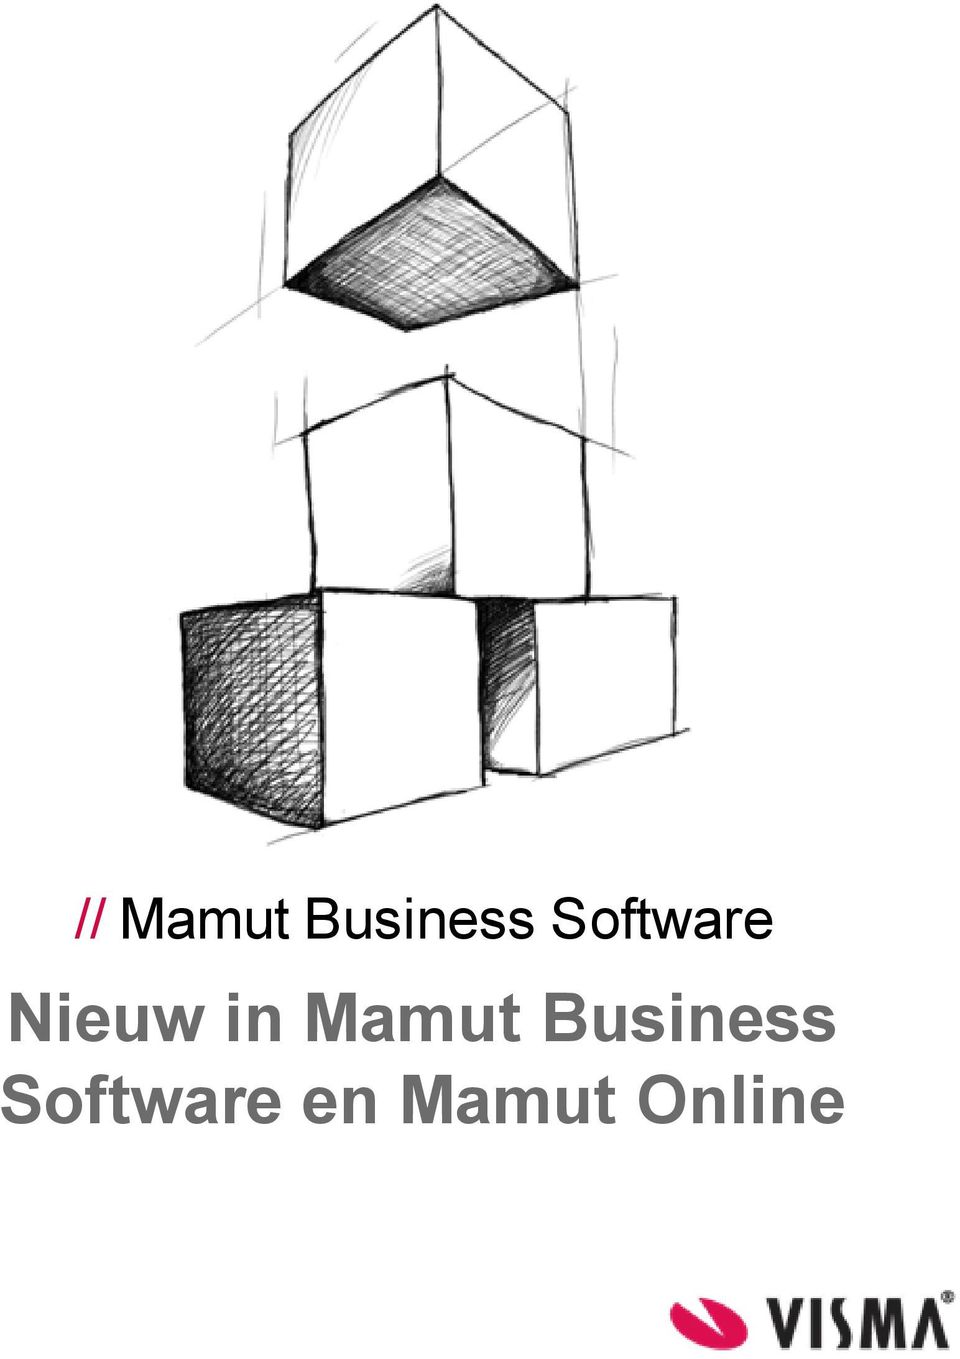 Mamut Business